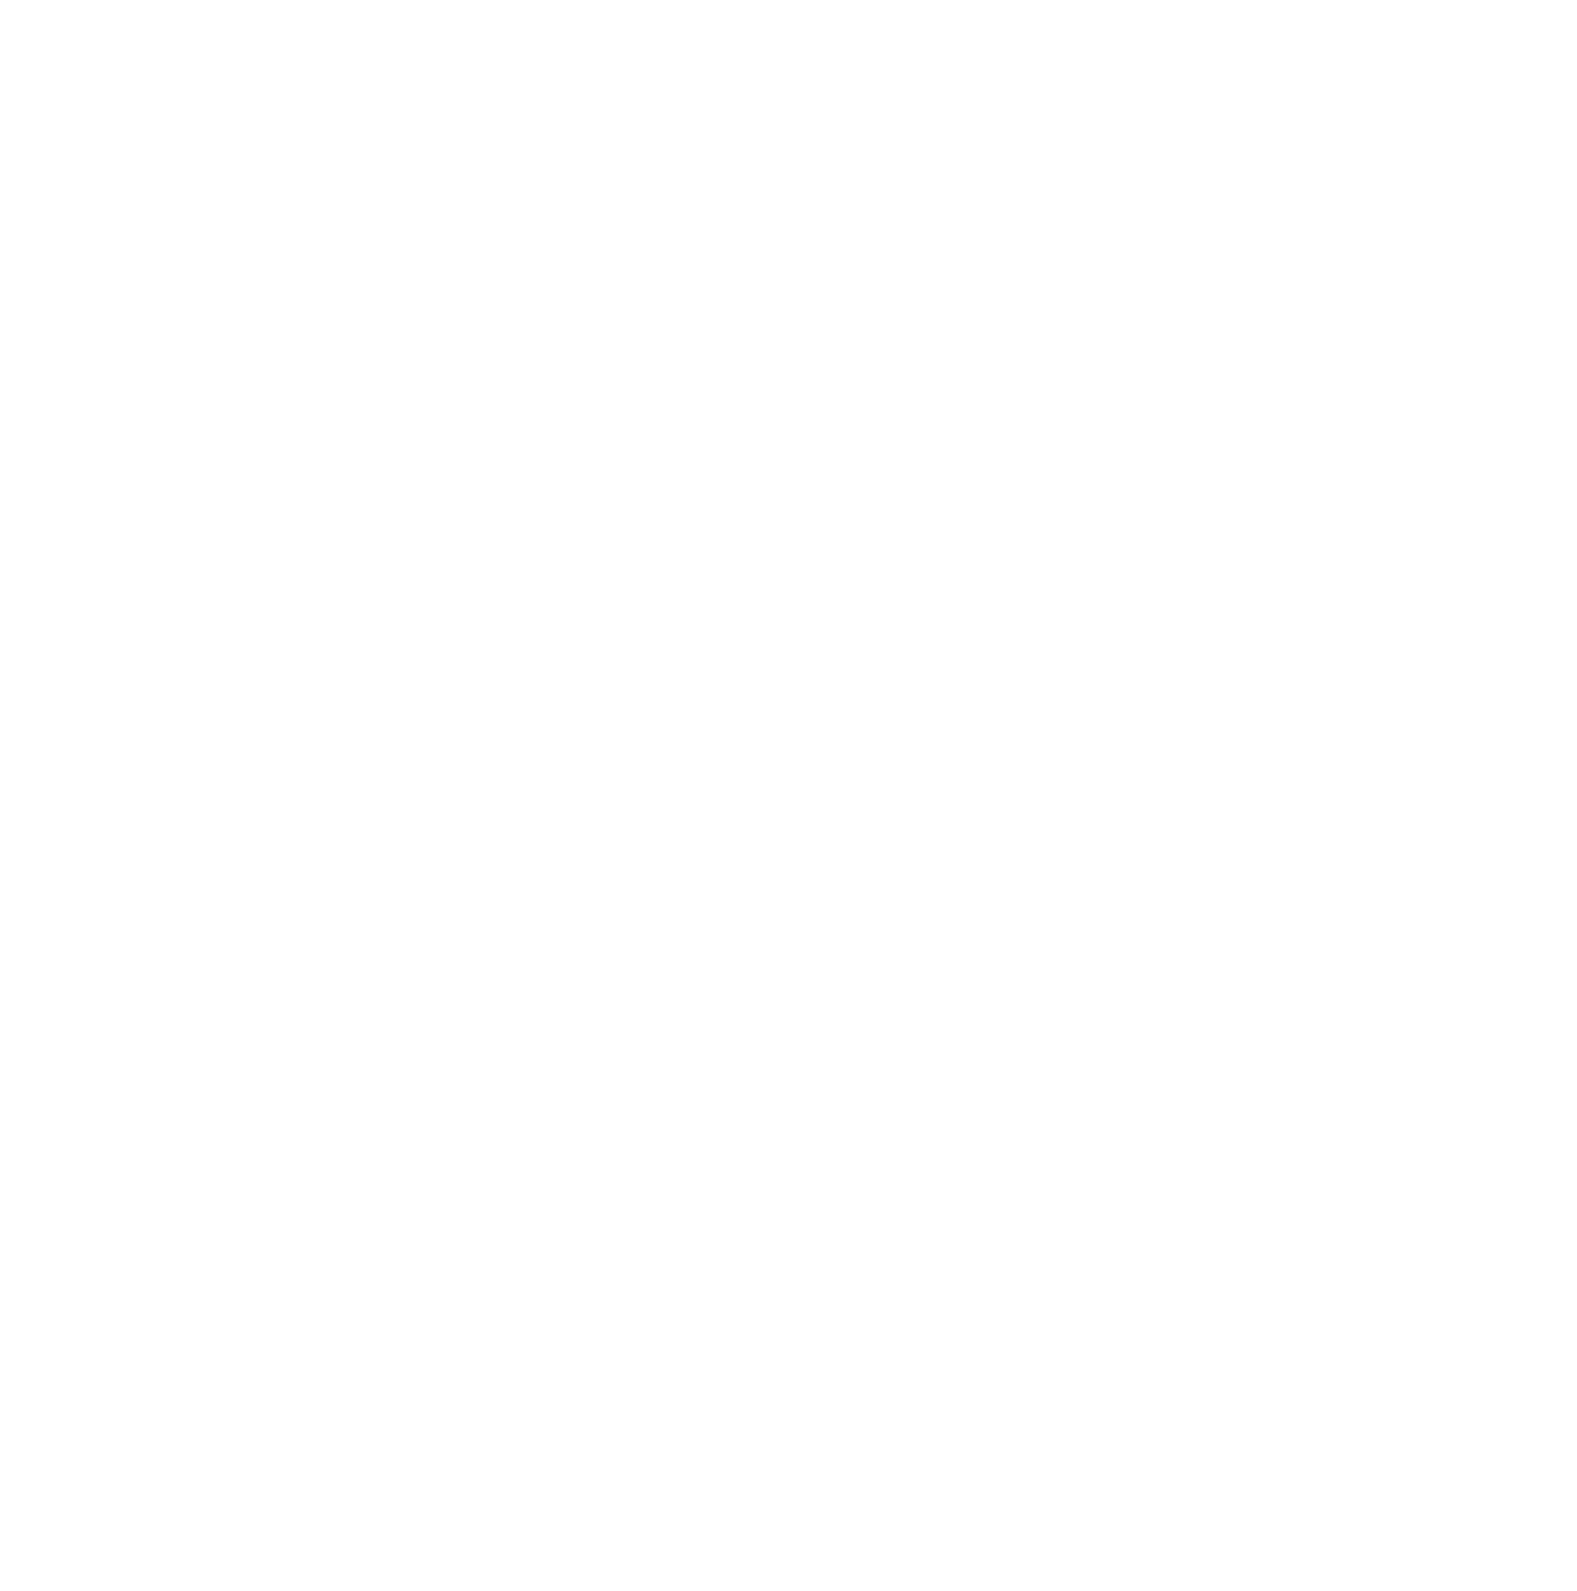 Burlington Stores logo pour fonds sombres (PNG transparent)